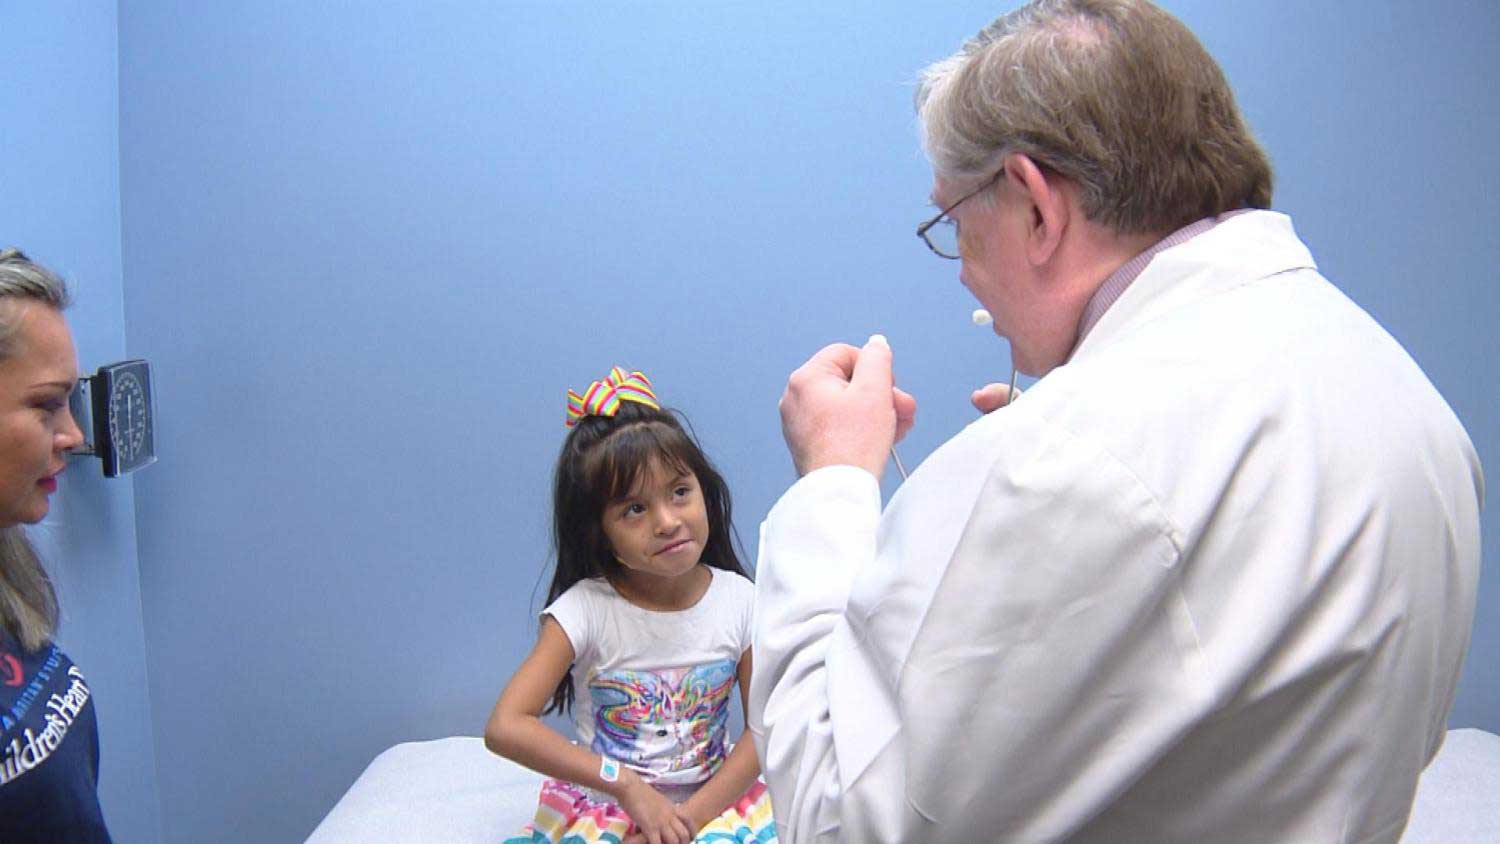 Dr. Leonard at Rocky Mountain Hospital for Children